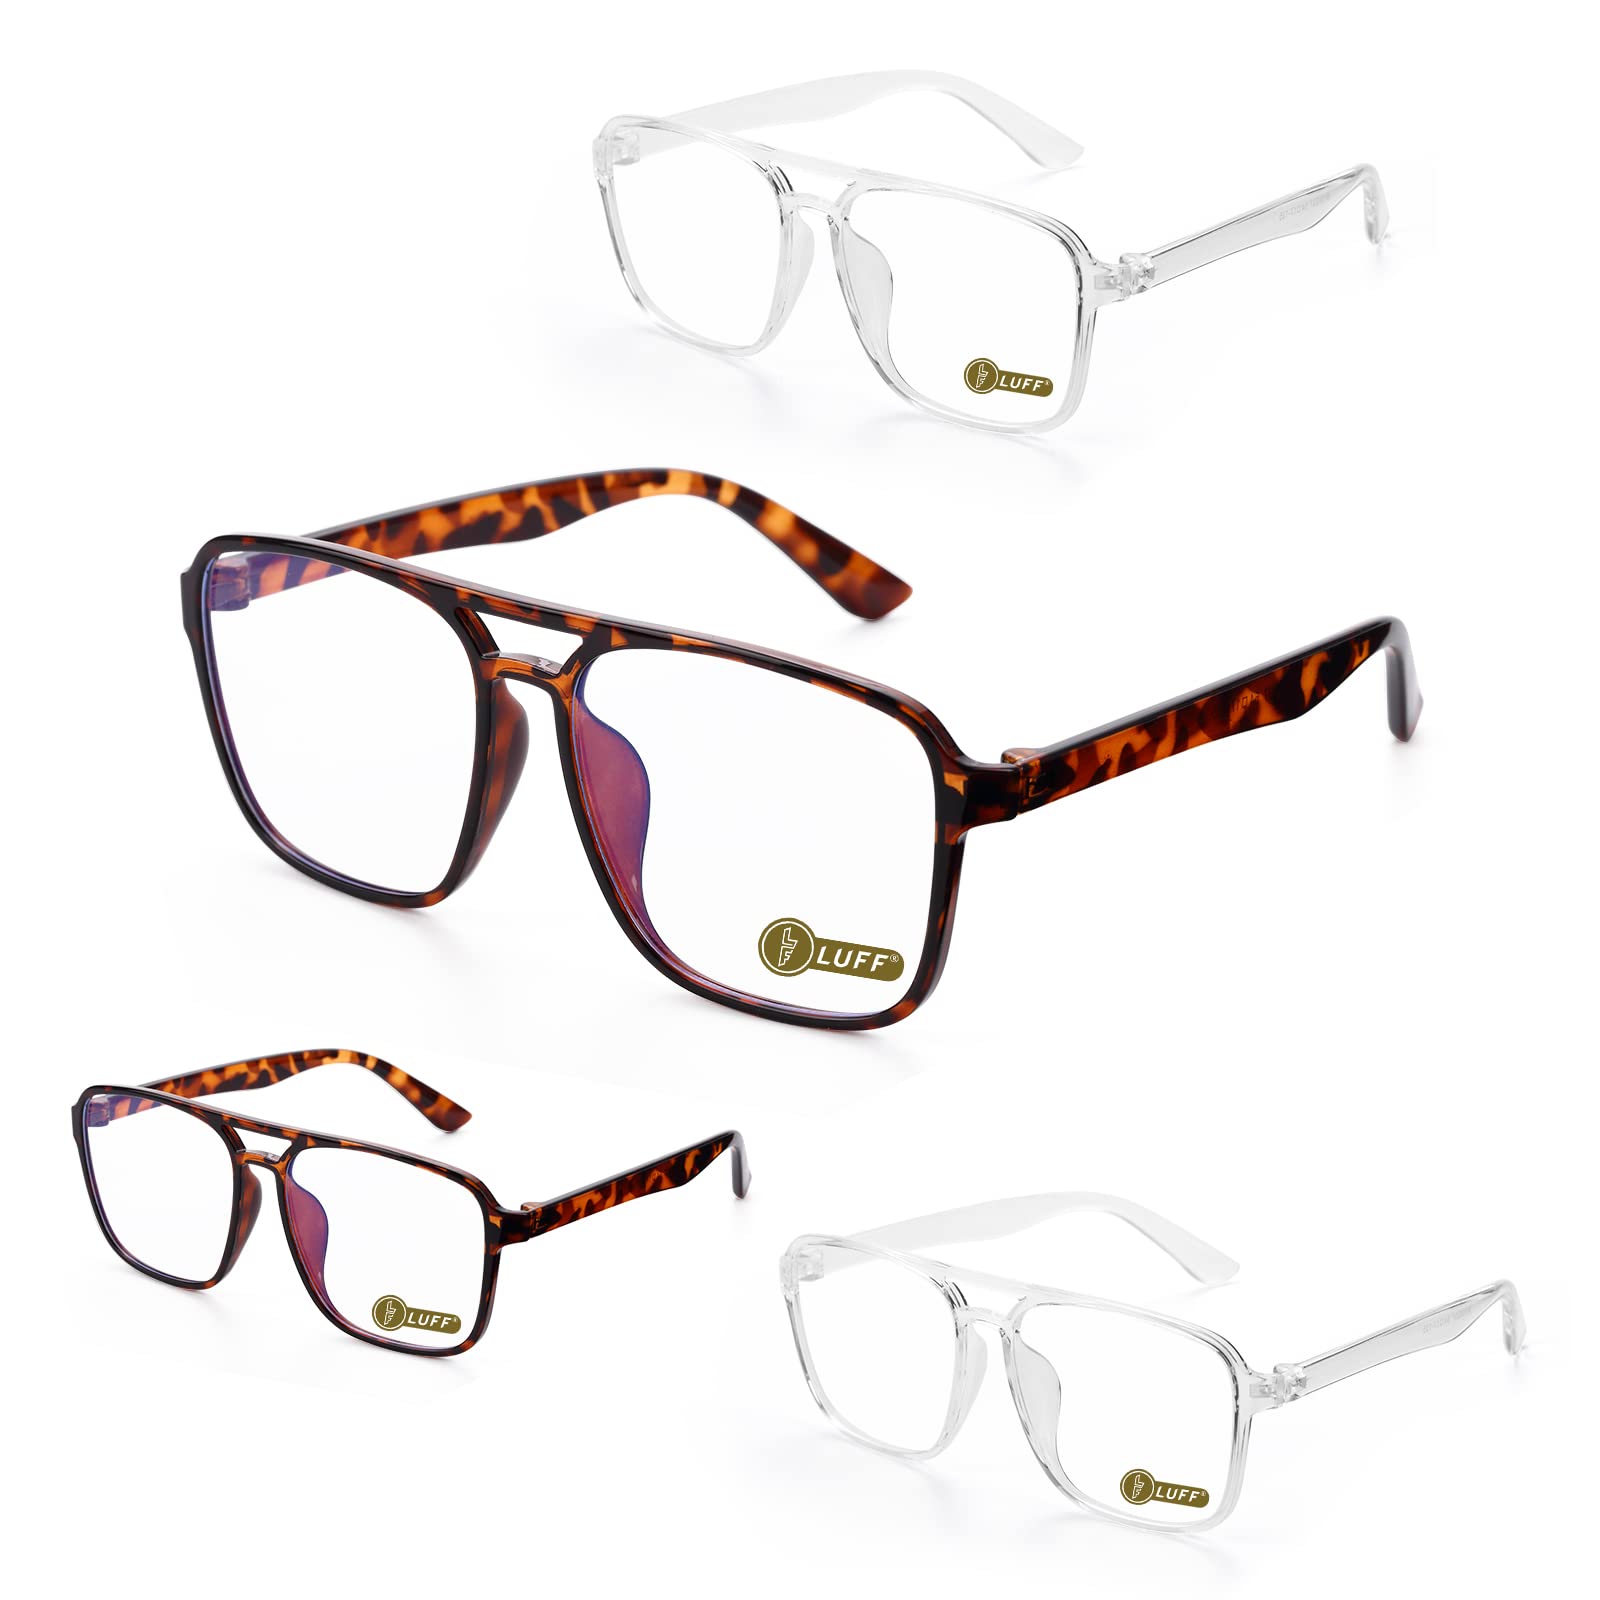 LUFF Blue-Light-Blocking Reading Glasses - 4pcs Prescription Eyeglasses for Women